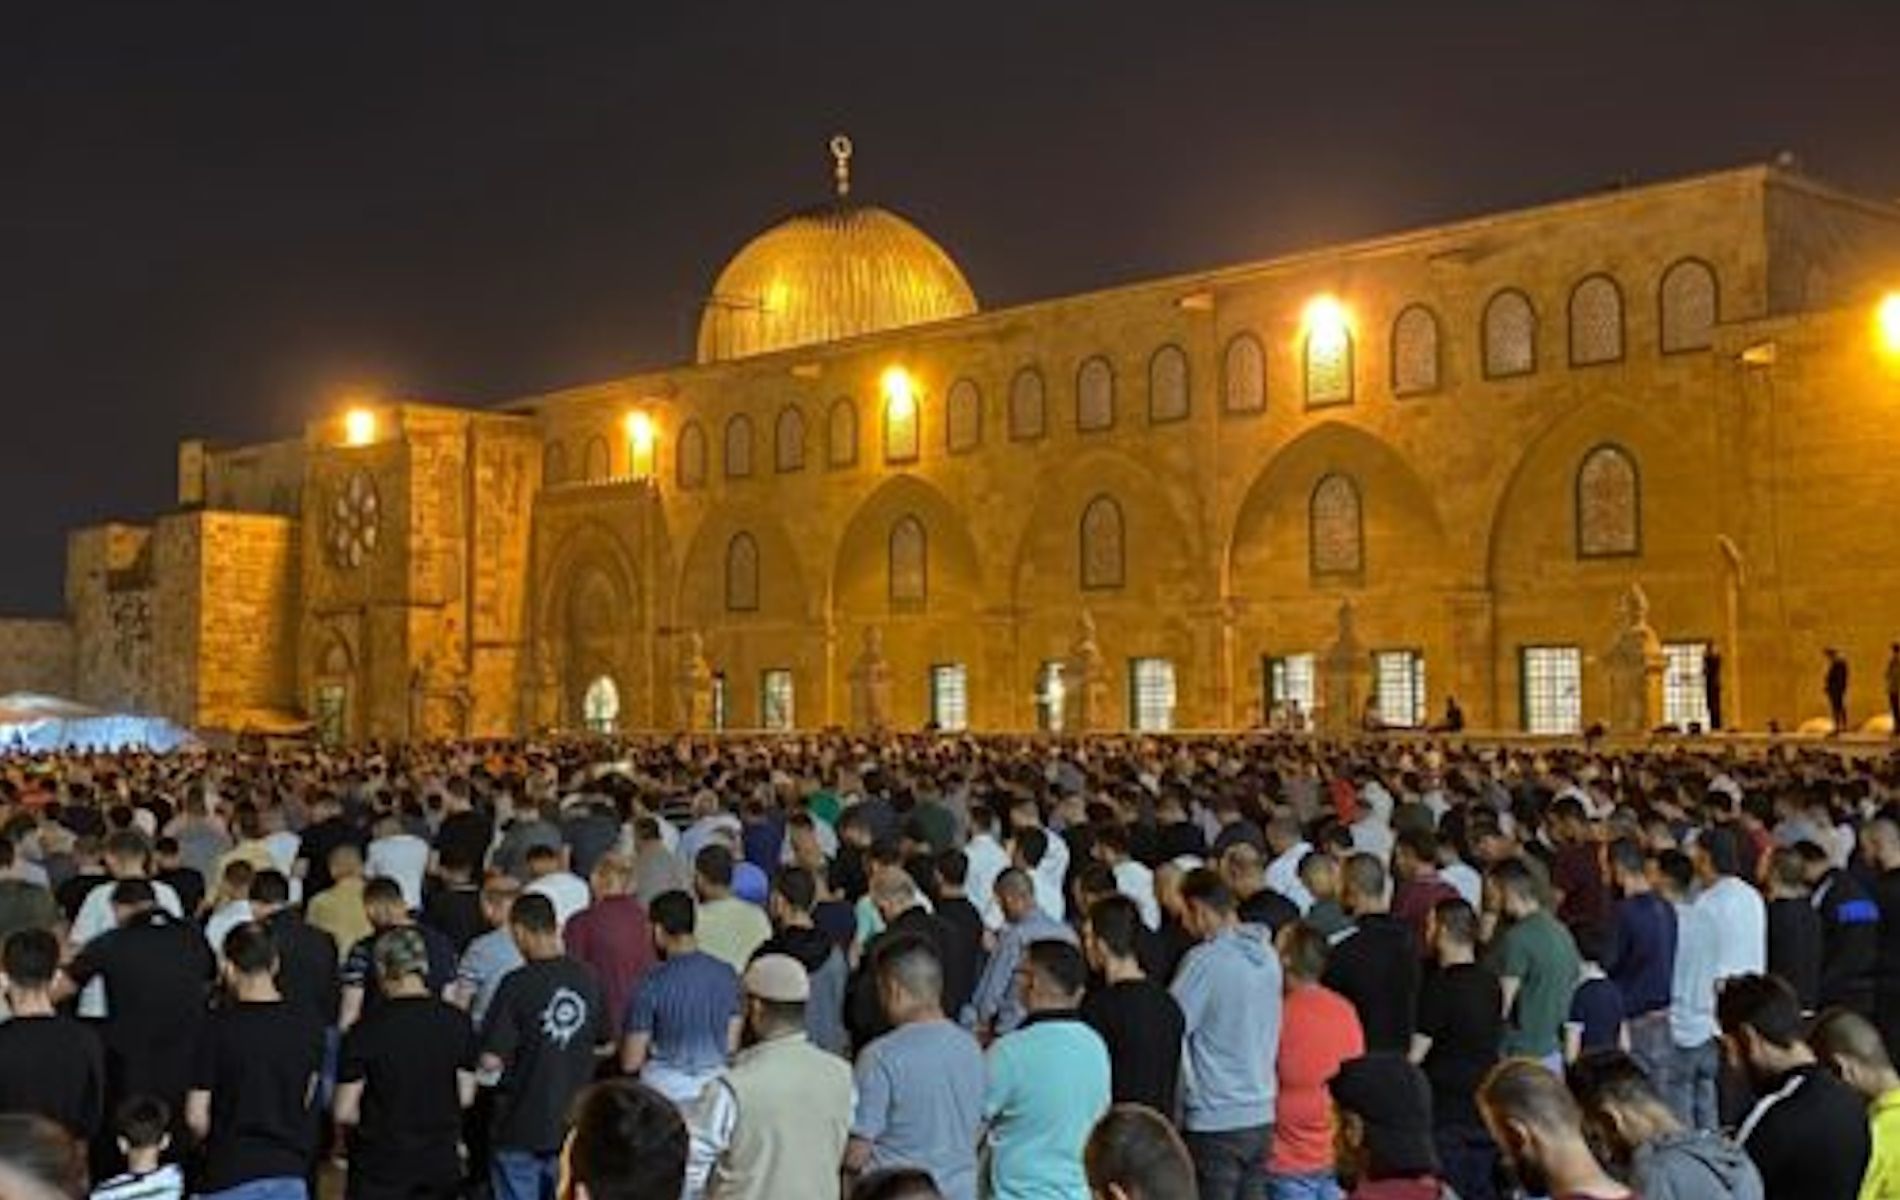 Israel membatasi akses masuk ke Masjid Al Aqsa selama Ramadan. PM Benjamin Netanyahu mengklaim langkah itu demi menjaga keamanan.